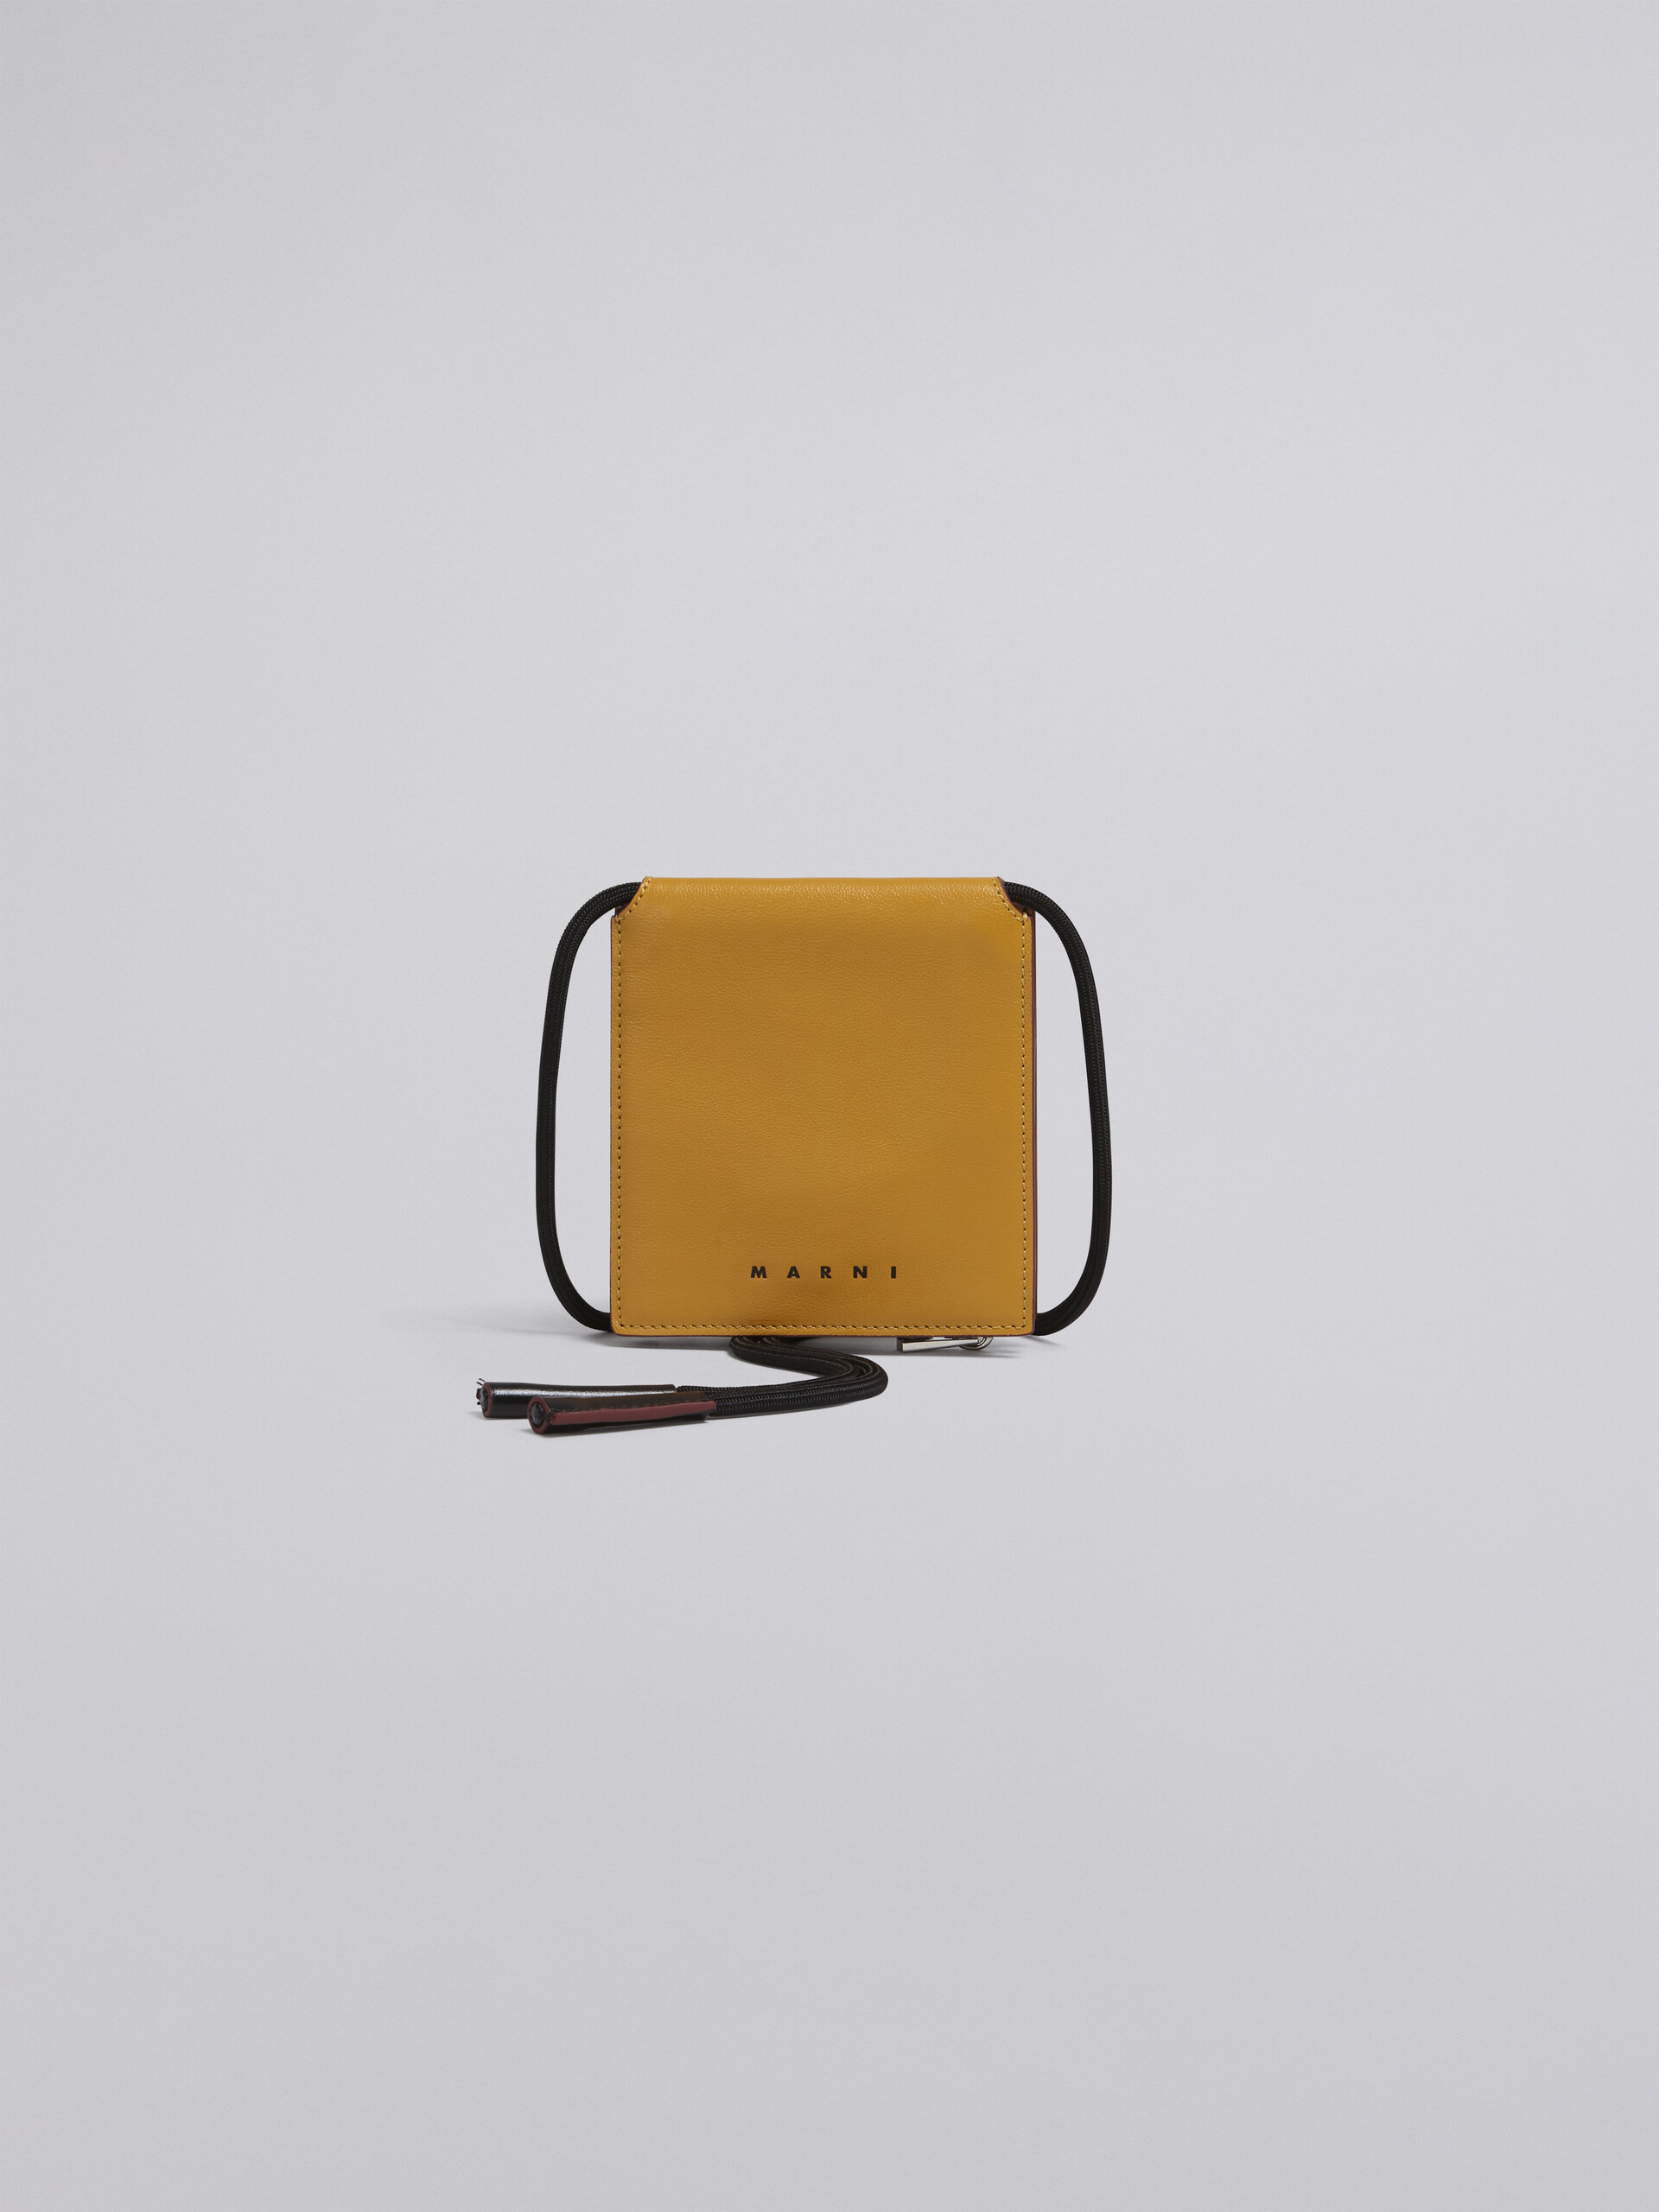 Portafoglio MUSEO bi-fold in vitello bicolore giallo e nero - Portafogli - Image 1